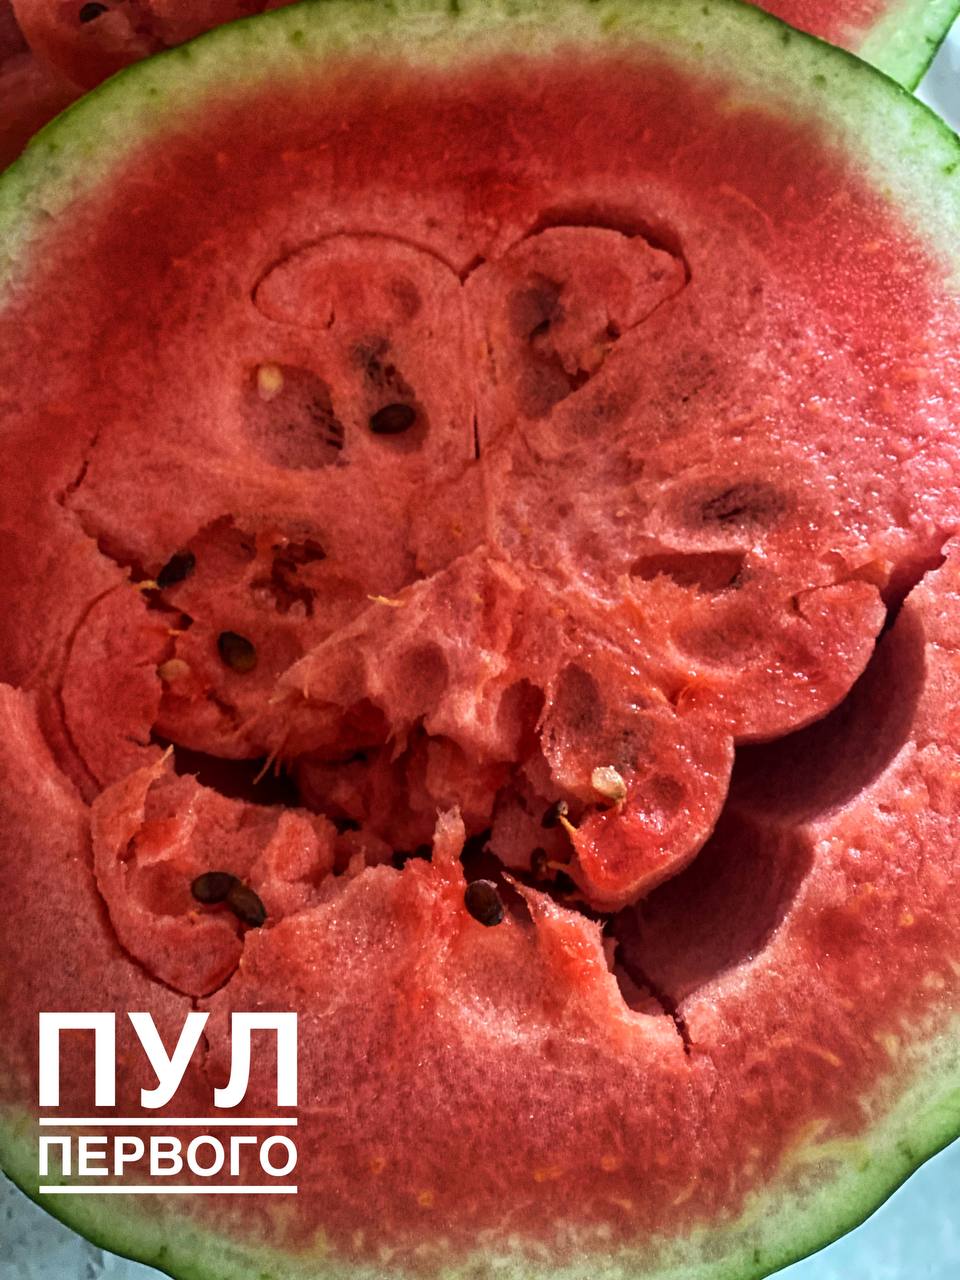 В сети показали, какие арбузы уродились у Лукашенко - есть с улыбкой внутри